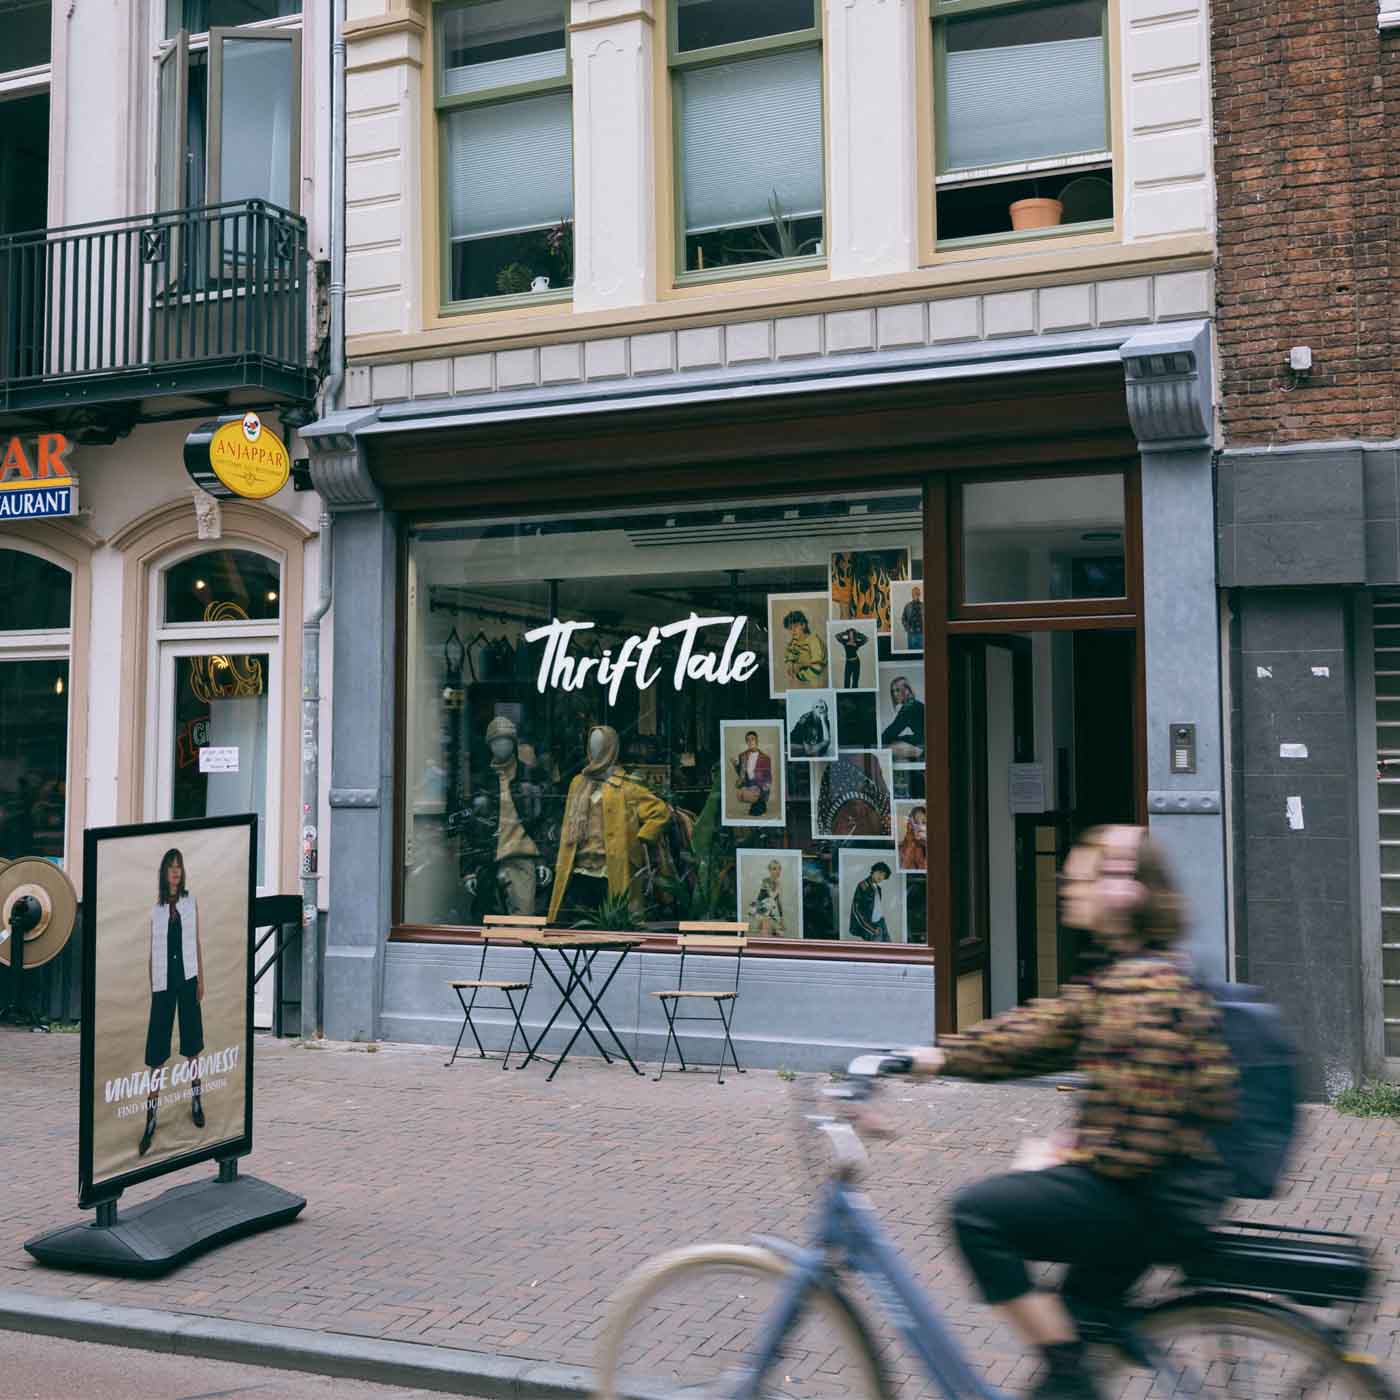 ThrifTale Utrecht Vredenburg 